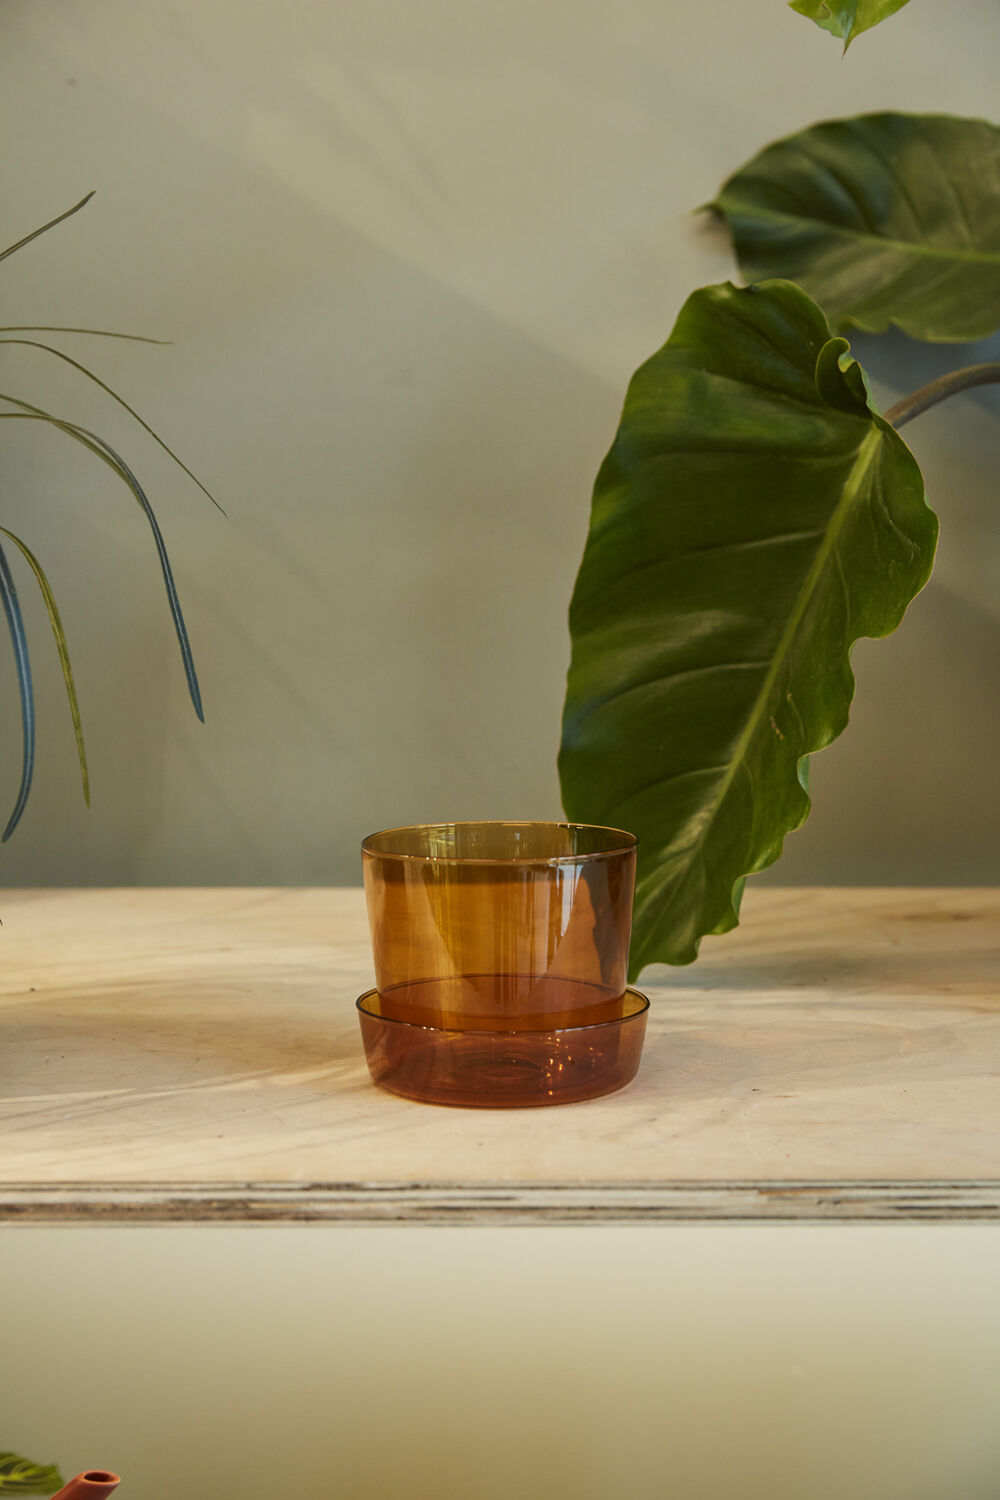 Amber Glass Pot w/ Saucer, 4"